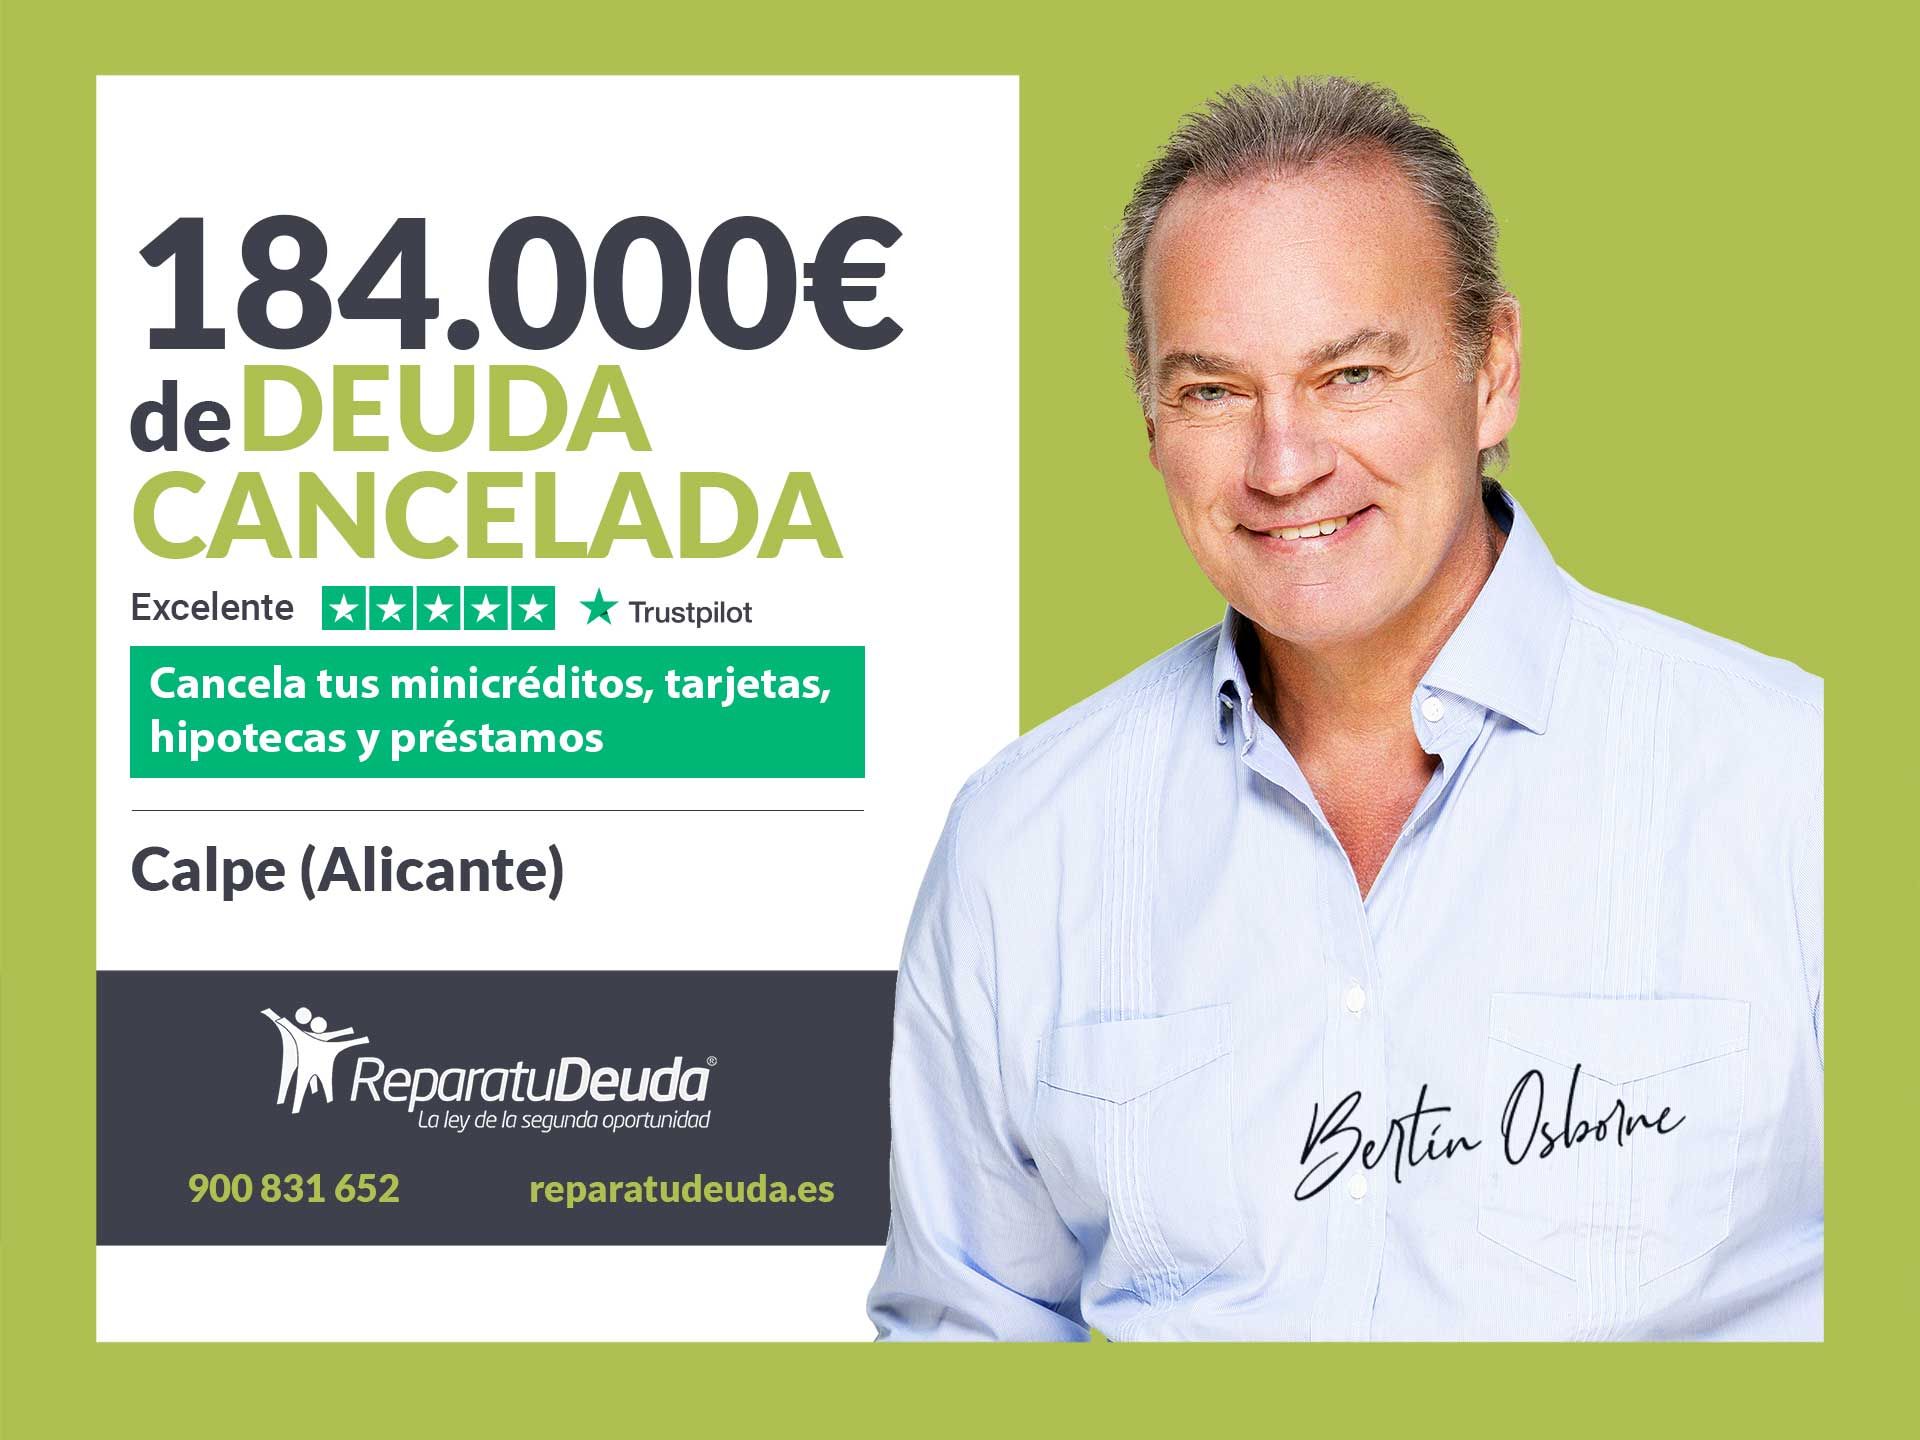 Repara tu Deuda Abogados cancela 184.000? en Calpe (Alicante) con la Ley de Segunda Oportunidad